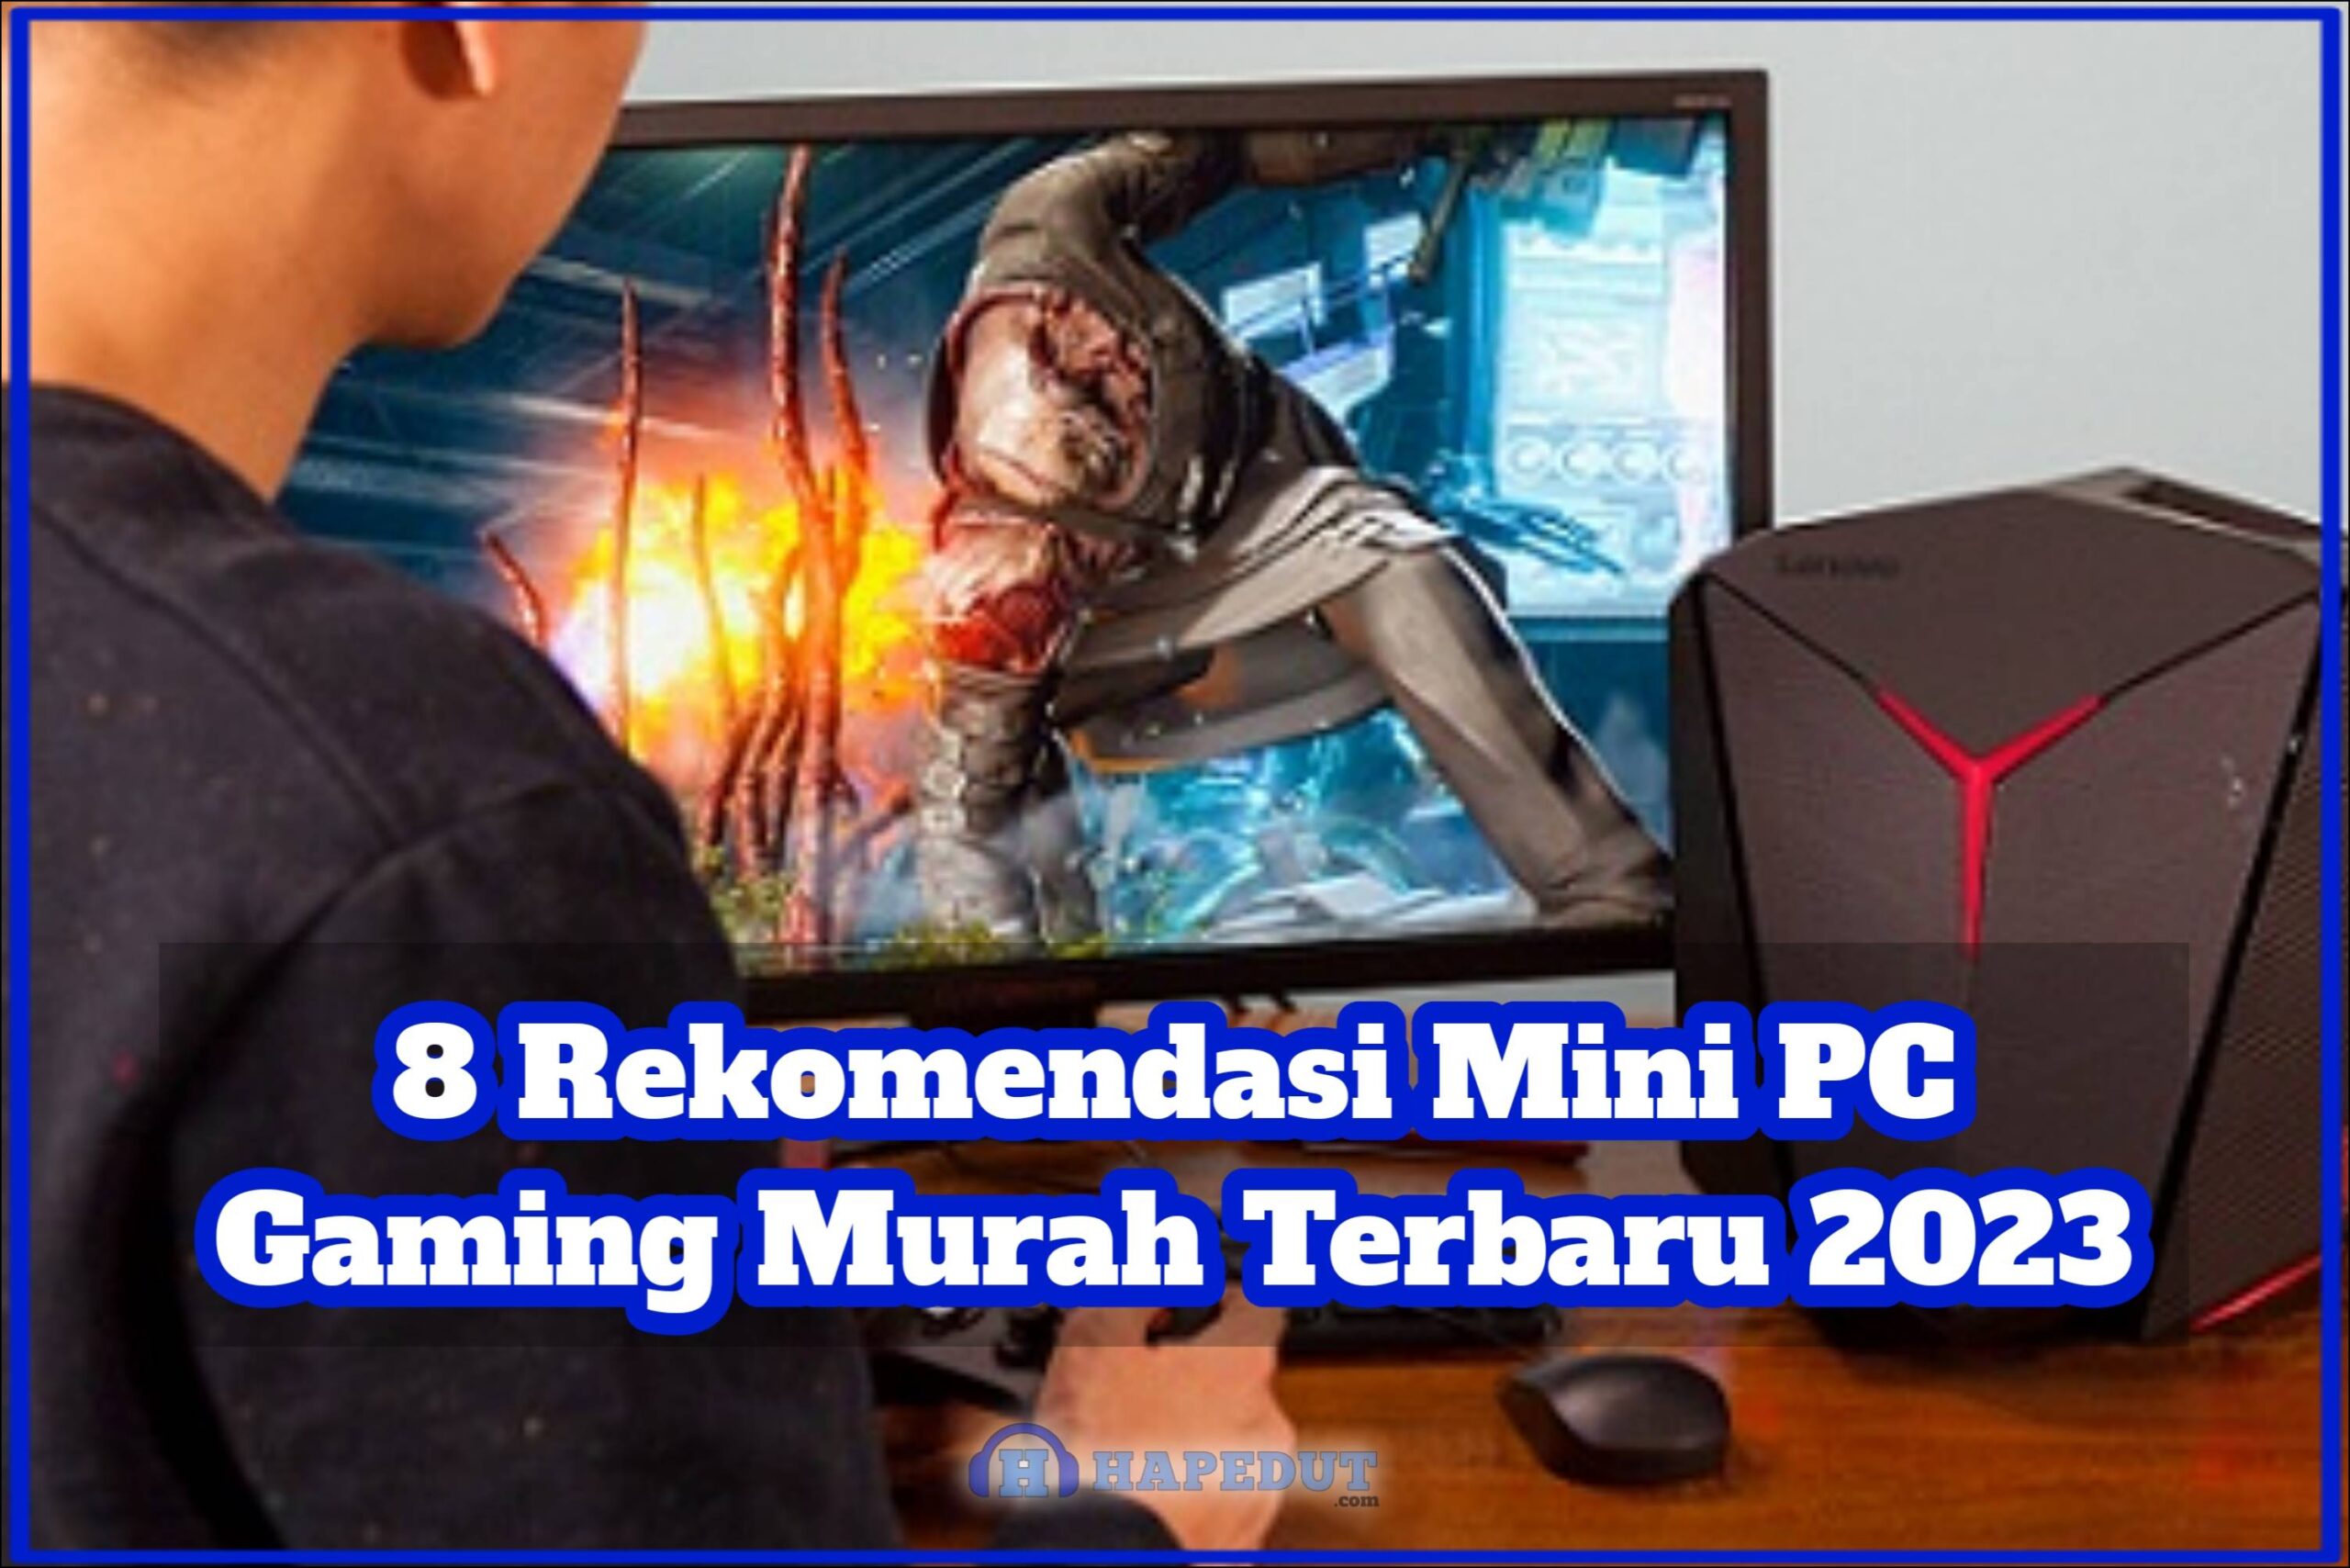 8 Rekomendasi Mini PC Gaming Murah Terbaru 2023